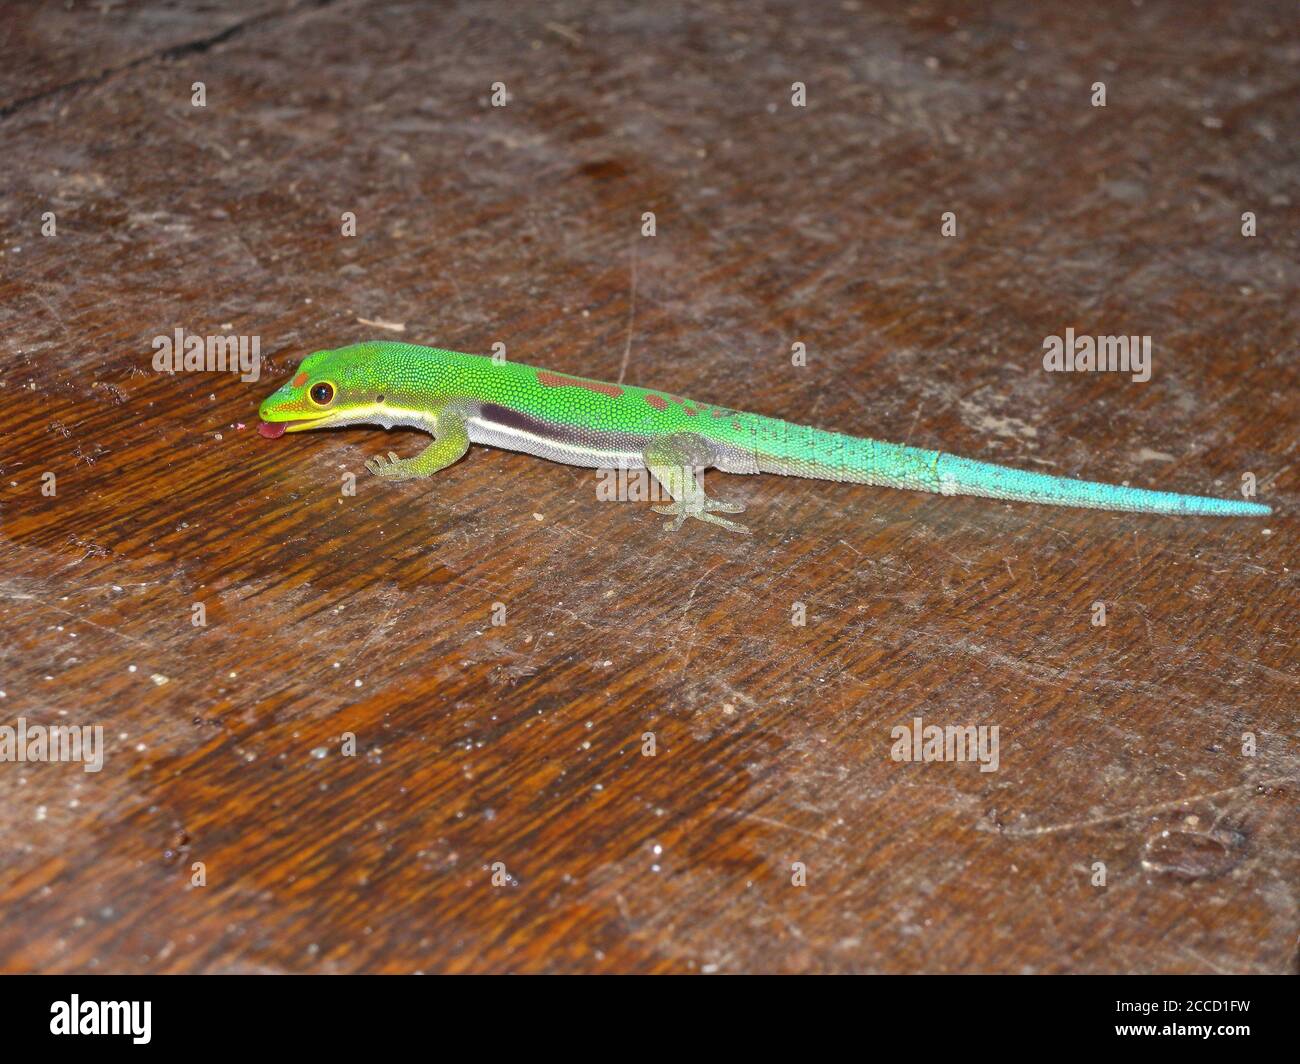 Le petit jour de Gecko (Phelsuma pusilla) est une espèce de gecko trouvée à Madagascar. Manger des morceaux d'une table dans un restaurant. Banque D'Images